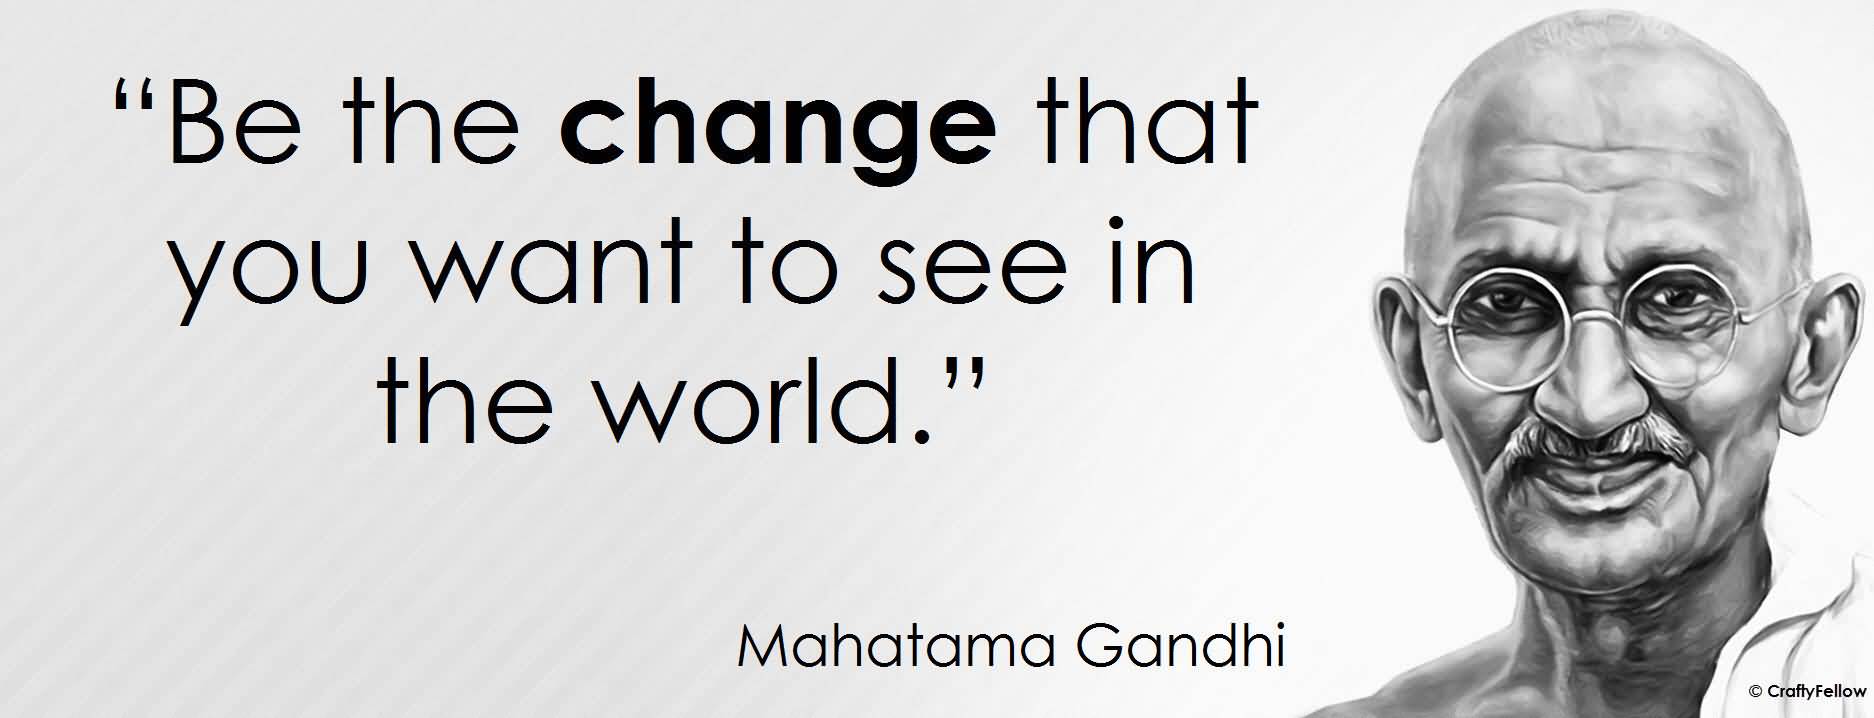 Life Purpose - Gandhi Quote